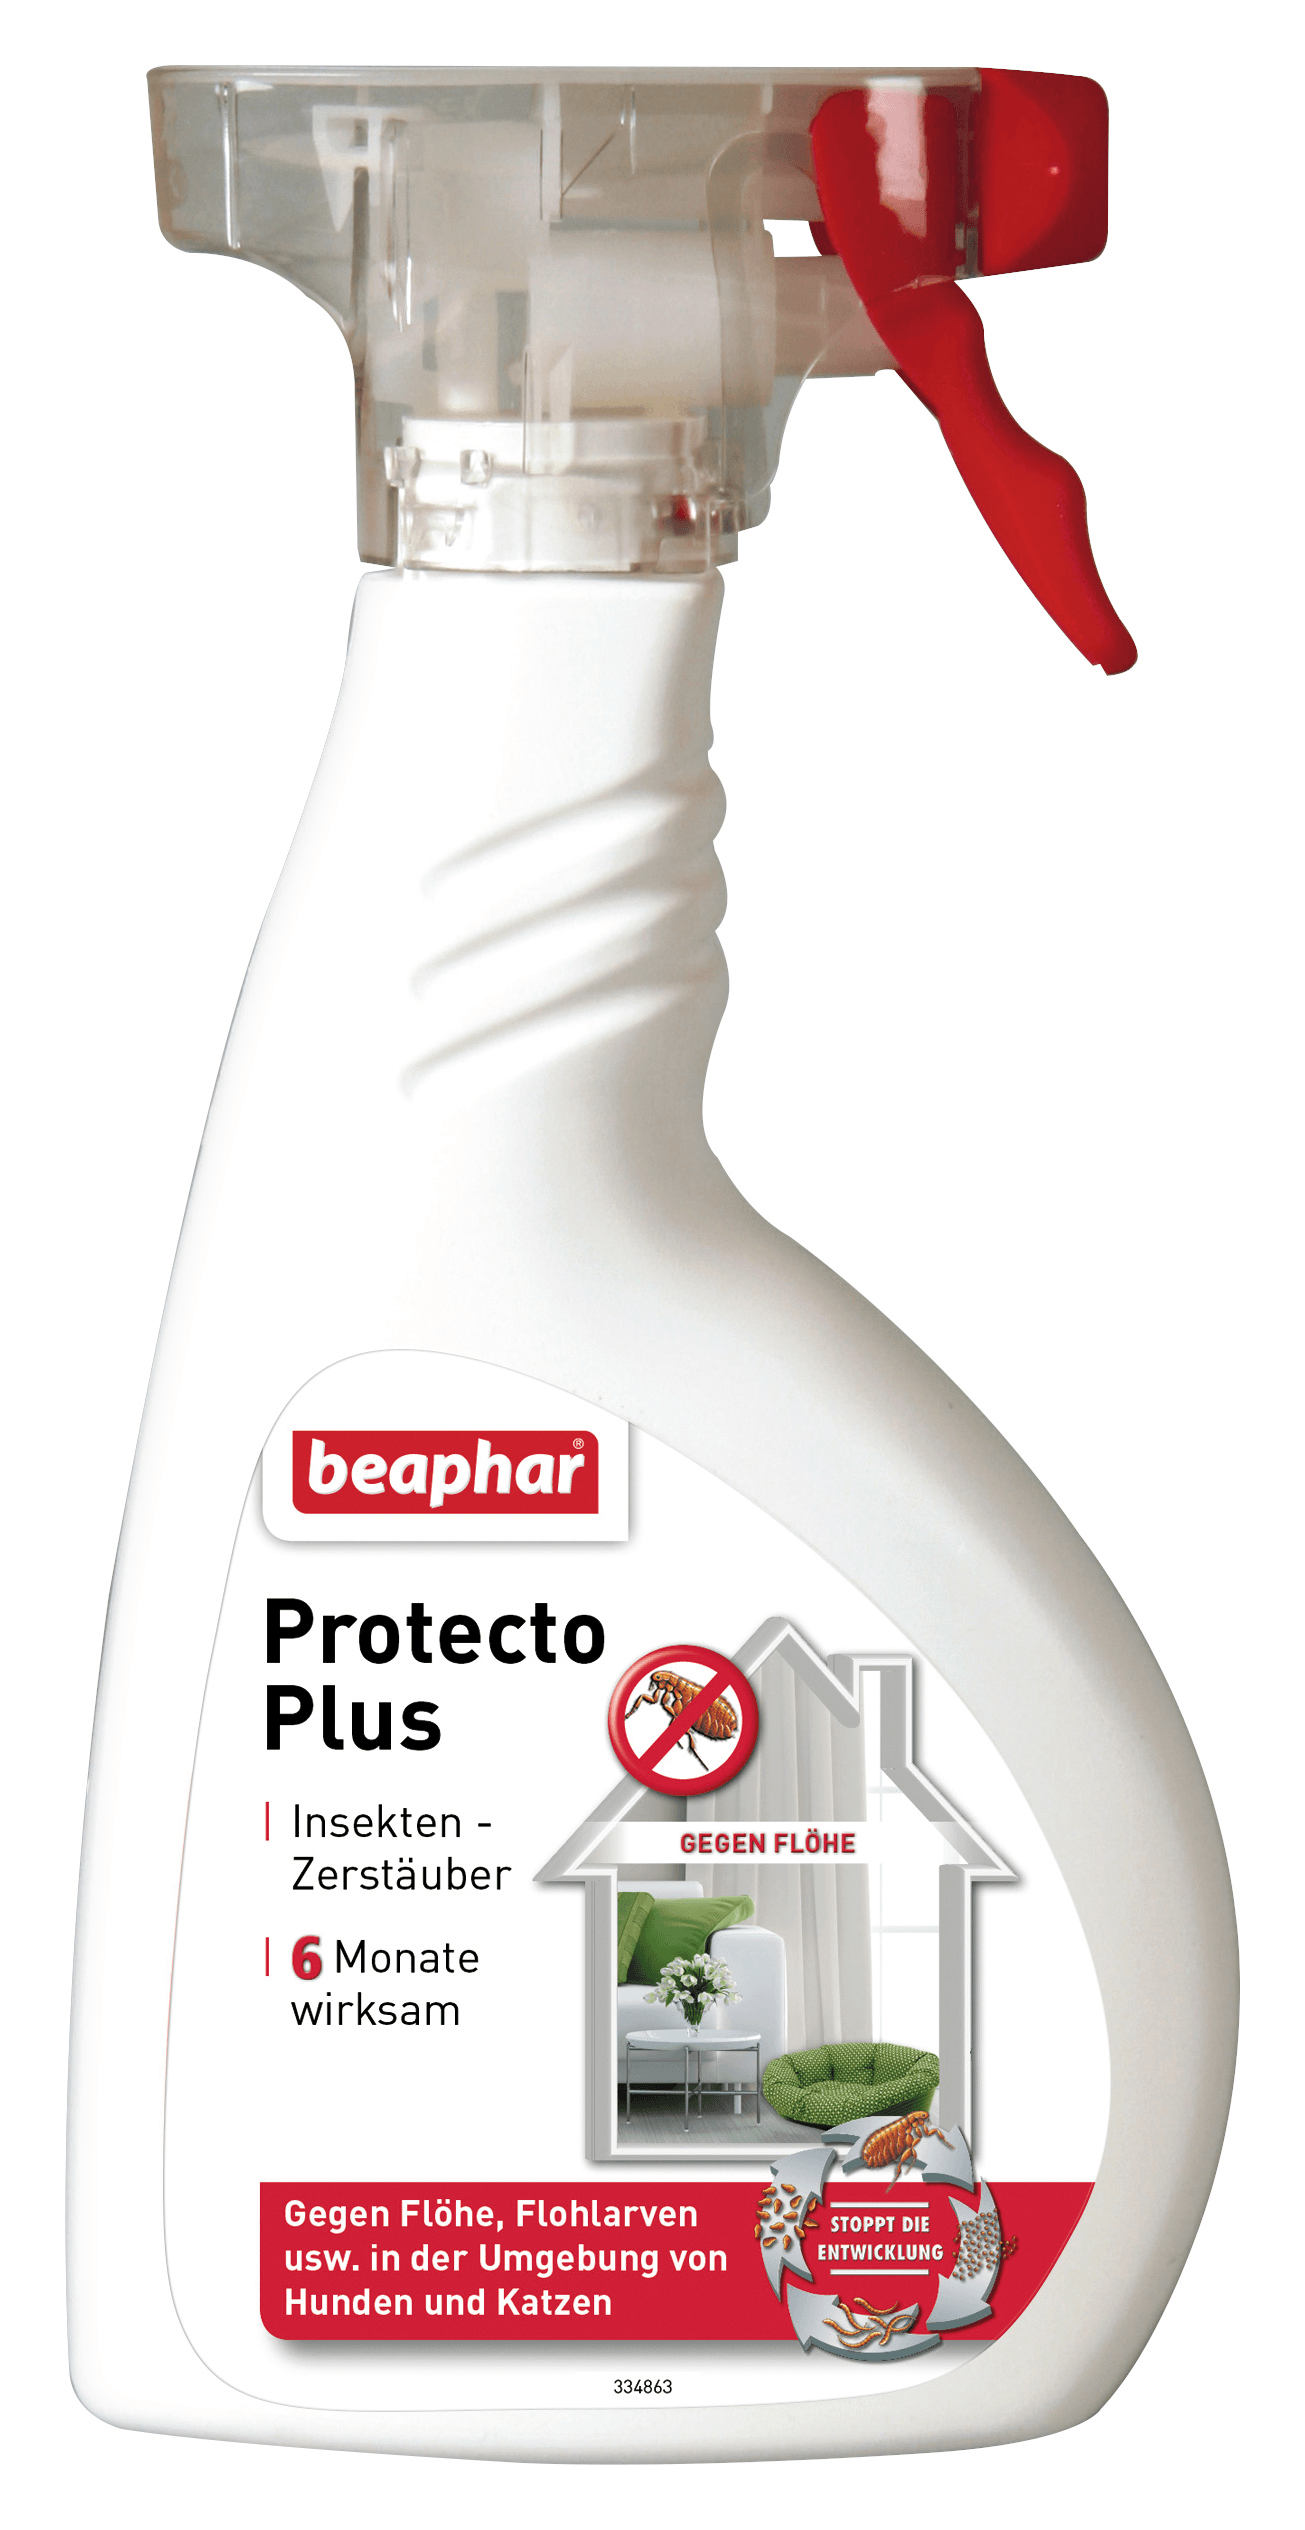 Спрей Beaphar Protecto Plus для обработки помещений от паразитов от зоомагазина Дино Зоо